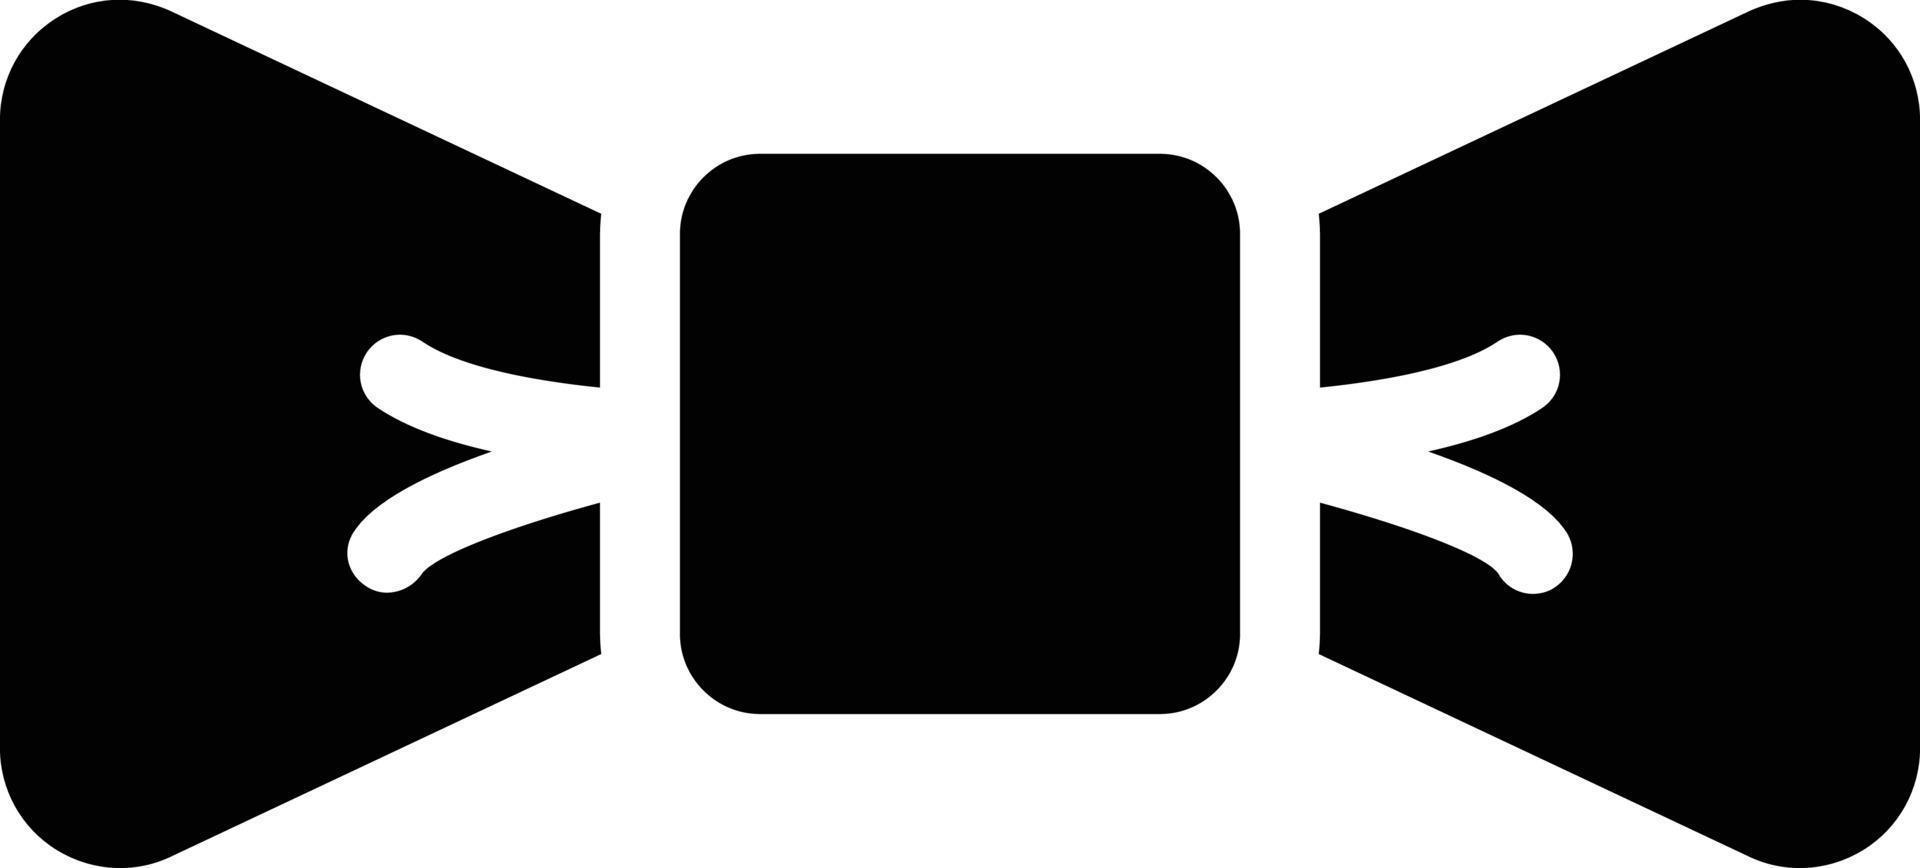 arco ilustração vetorial em um ícones de symbols.vector de qualidade background.premium para conceito e design gráfico. vetor